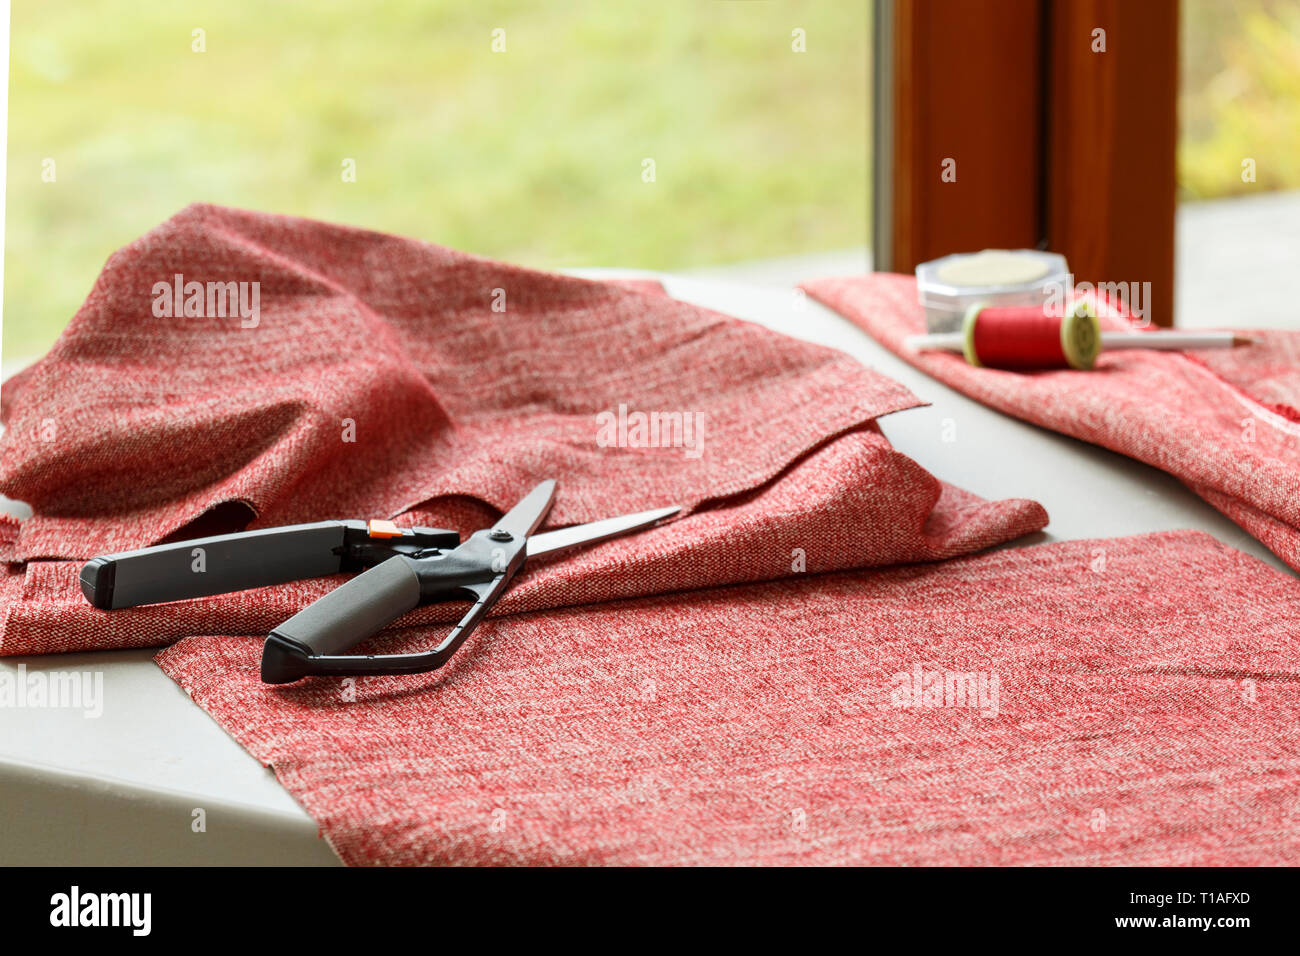 Home projets loisirs artisanat couture. Tissu Tissu, ciseaux, et thread sur table. Banque D'Images